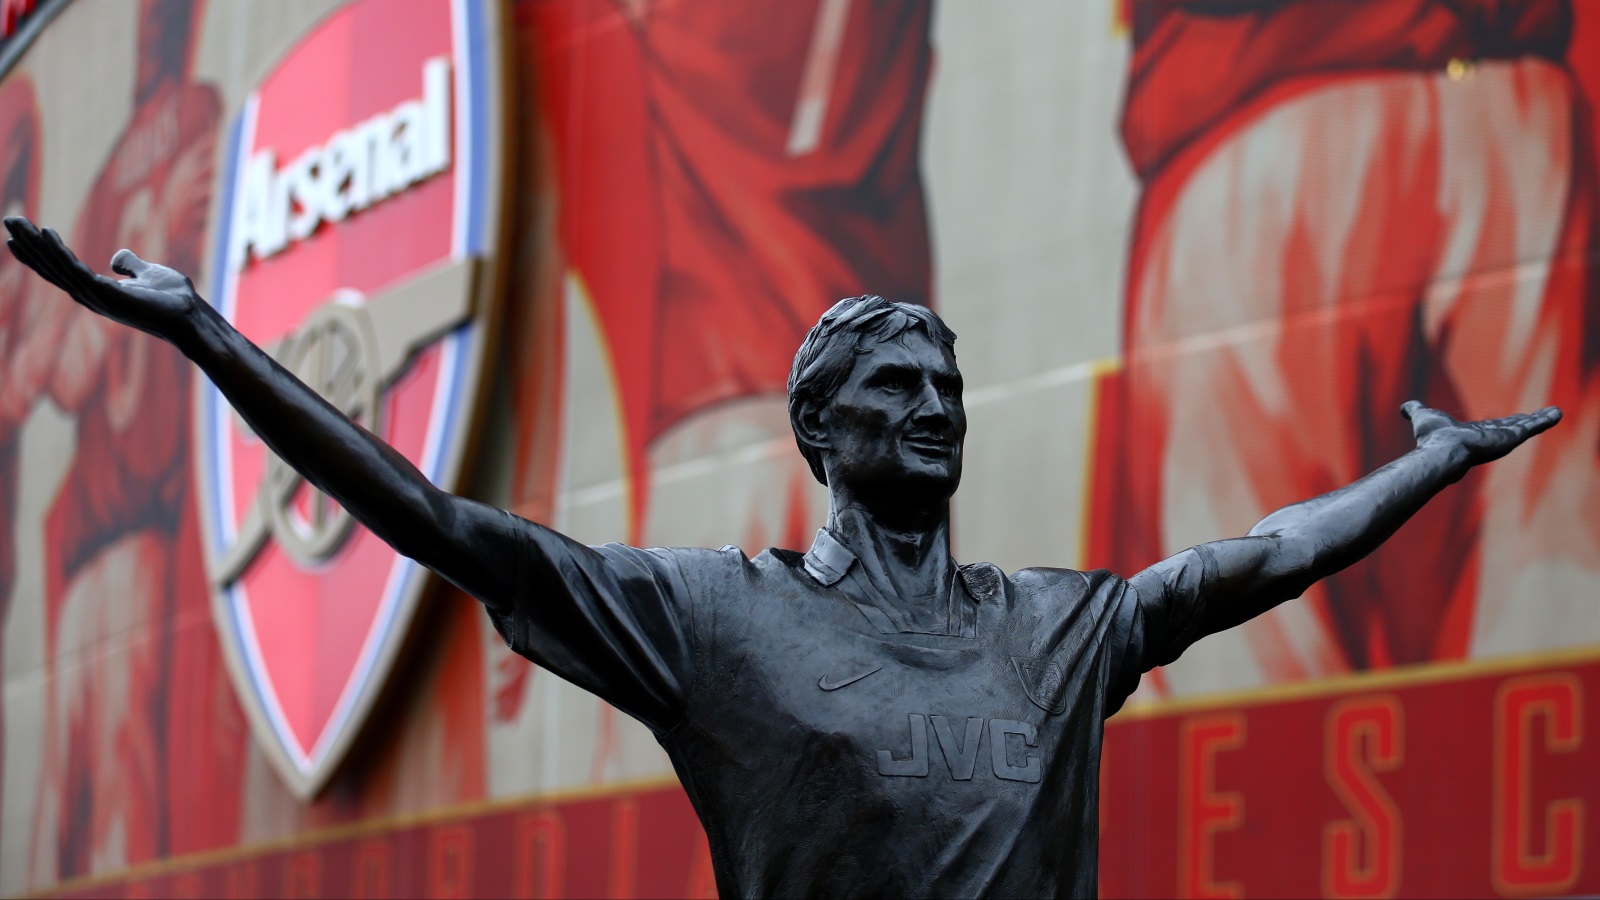  تمثال المدافع توني آدامز أمام ملعب فريقه الأرسنال والذي لعب في صفوفه بين عامي 1983 و2002